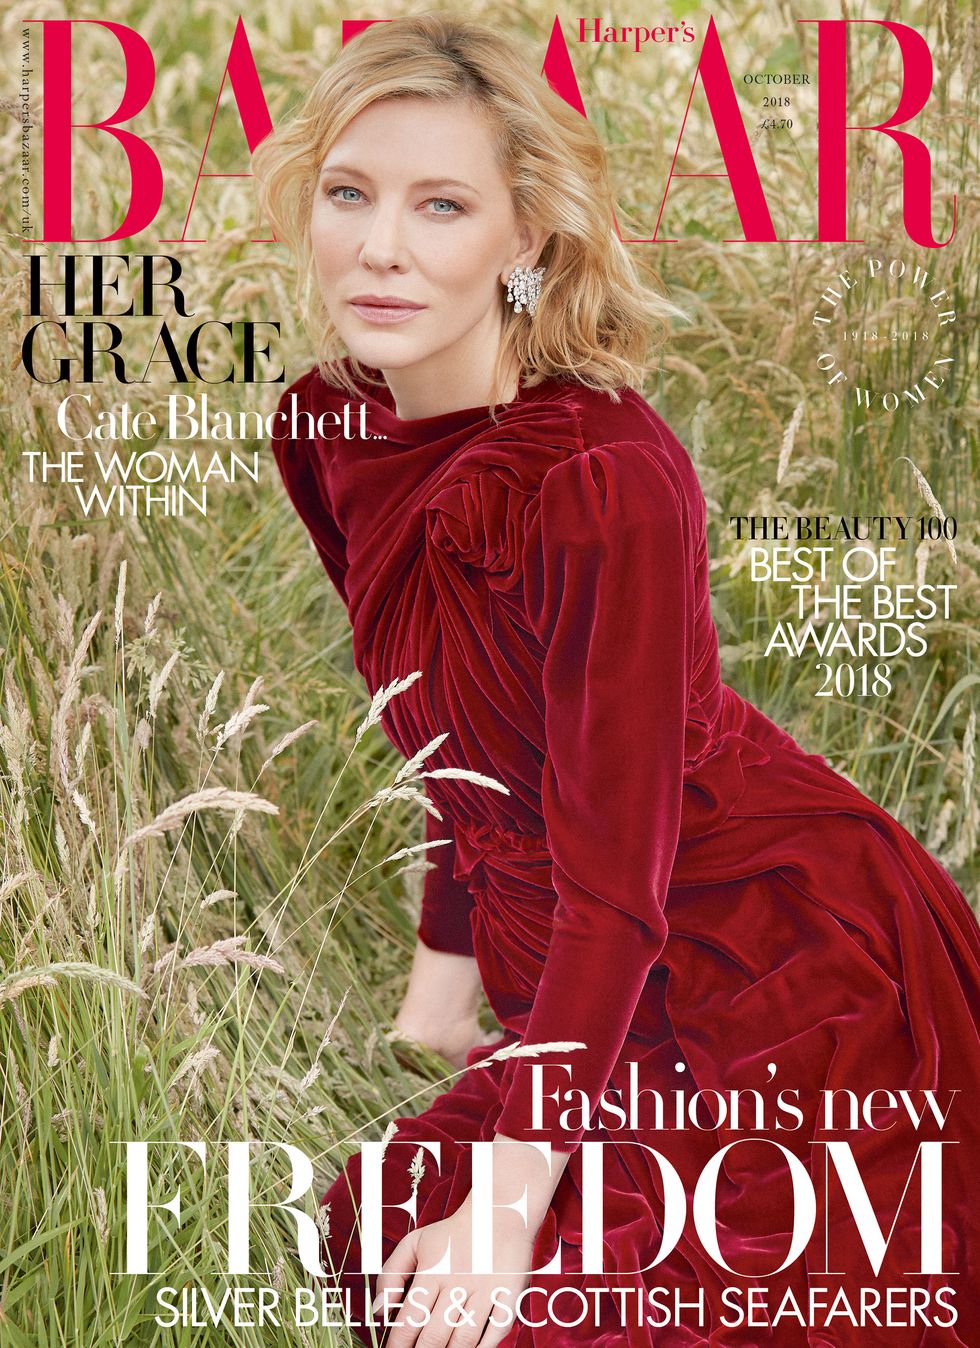 Cate Blanchett for Harper's Bazaar October 2018 cover shoot